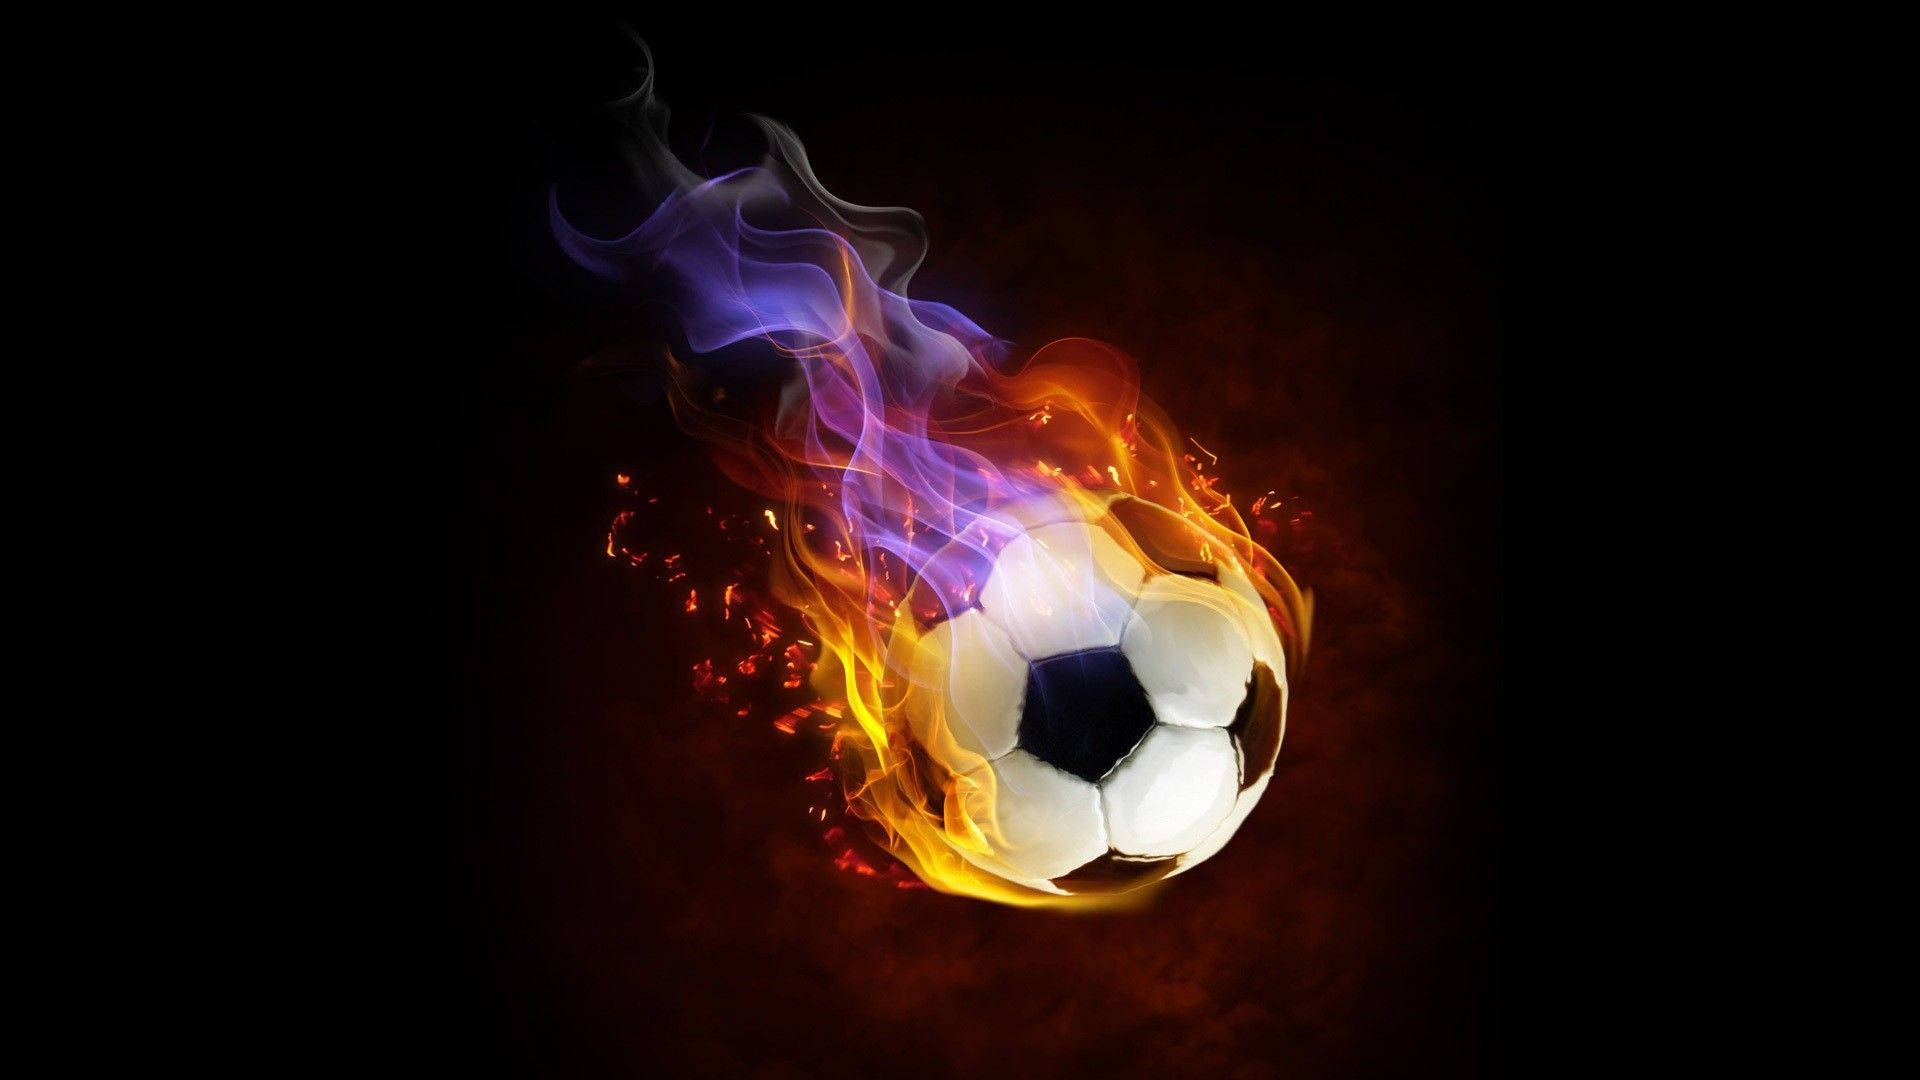 Cool Soccer Ball Flames Wallpaper